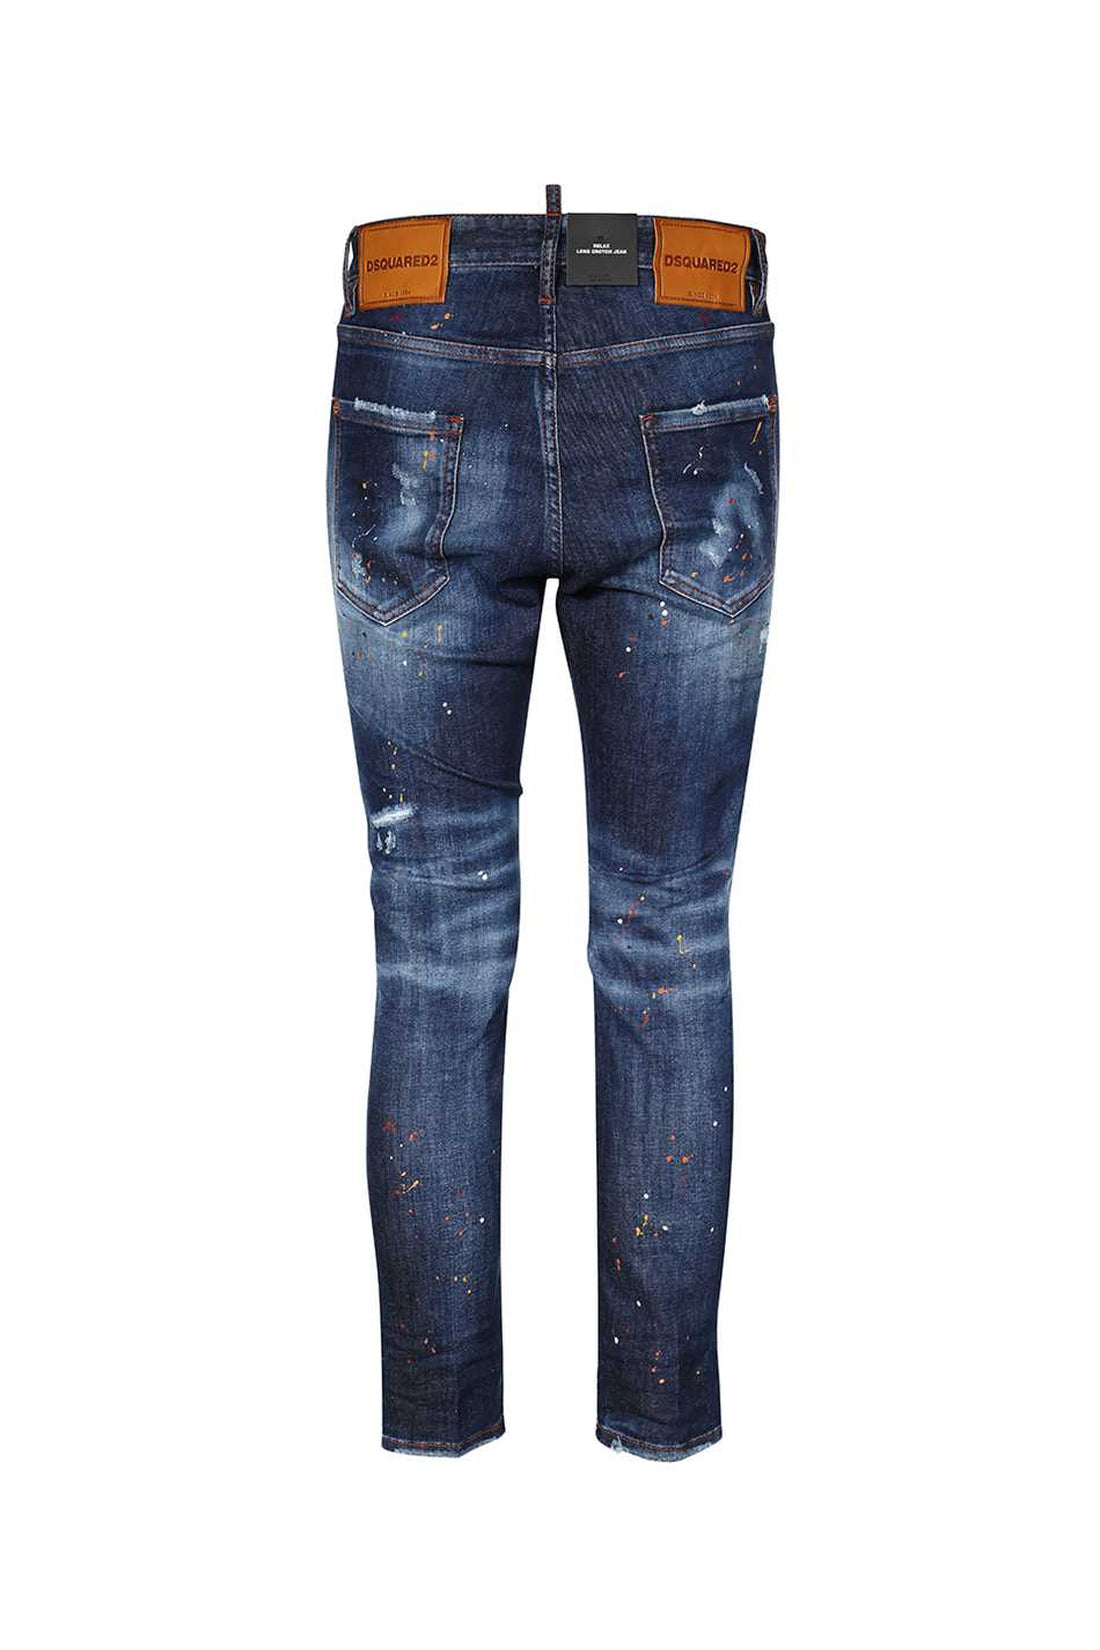 Dsquared2-OUTLET-SALE-5-pocket jeans-ARCHIVIST